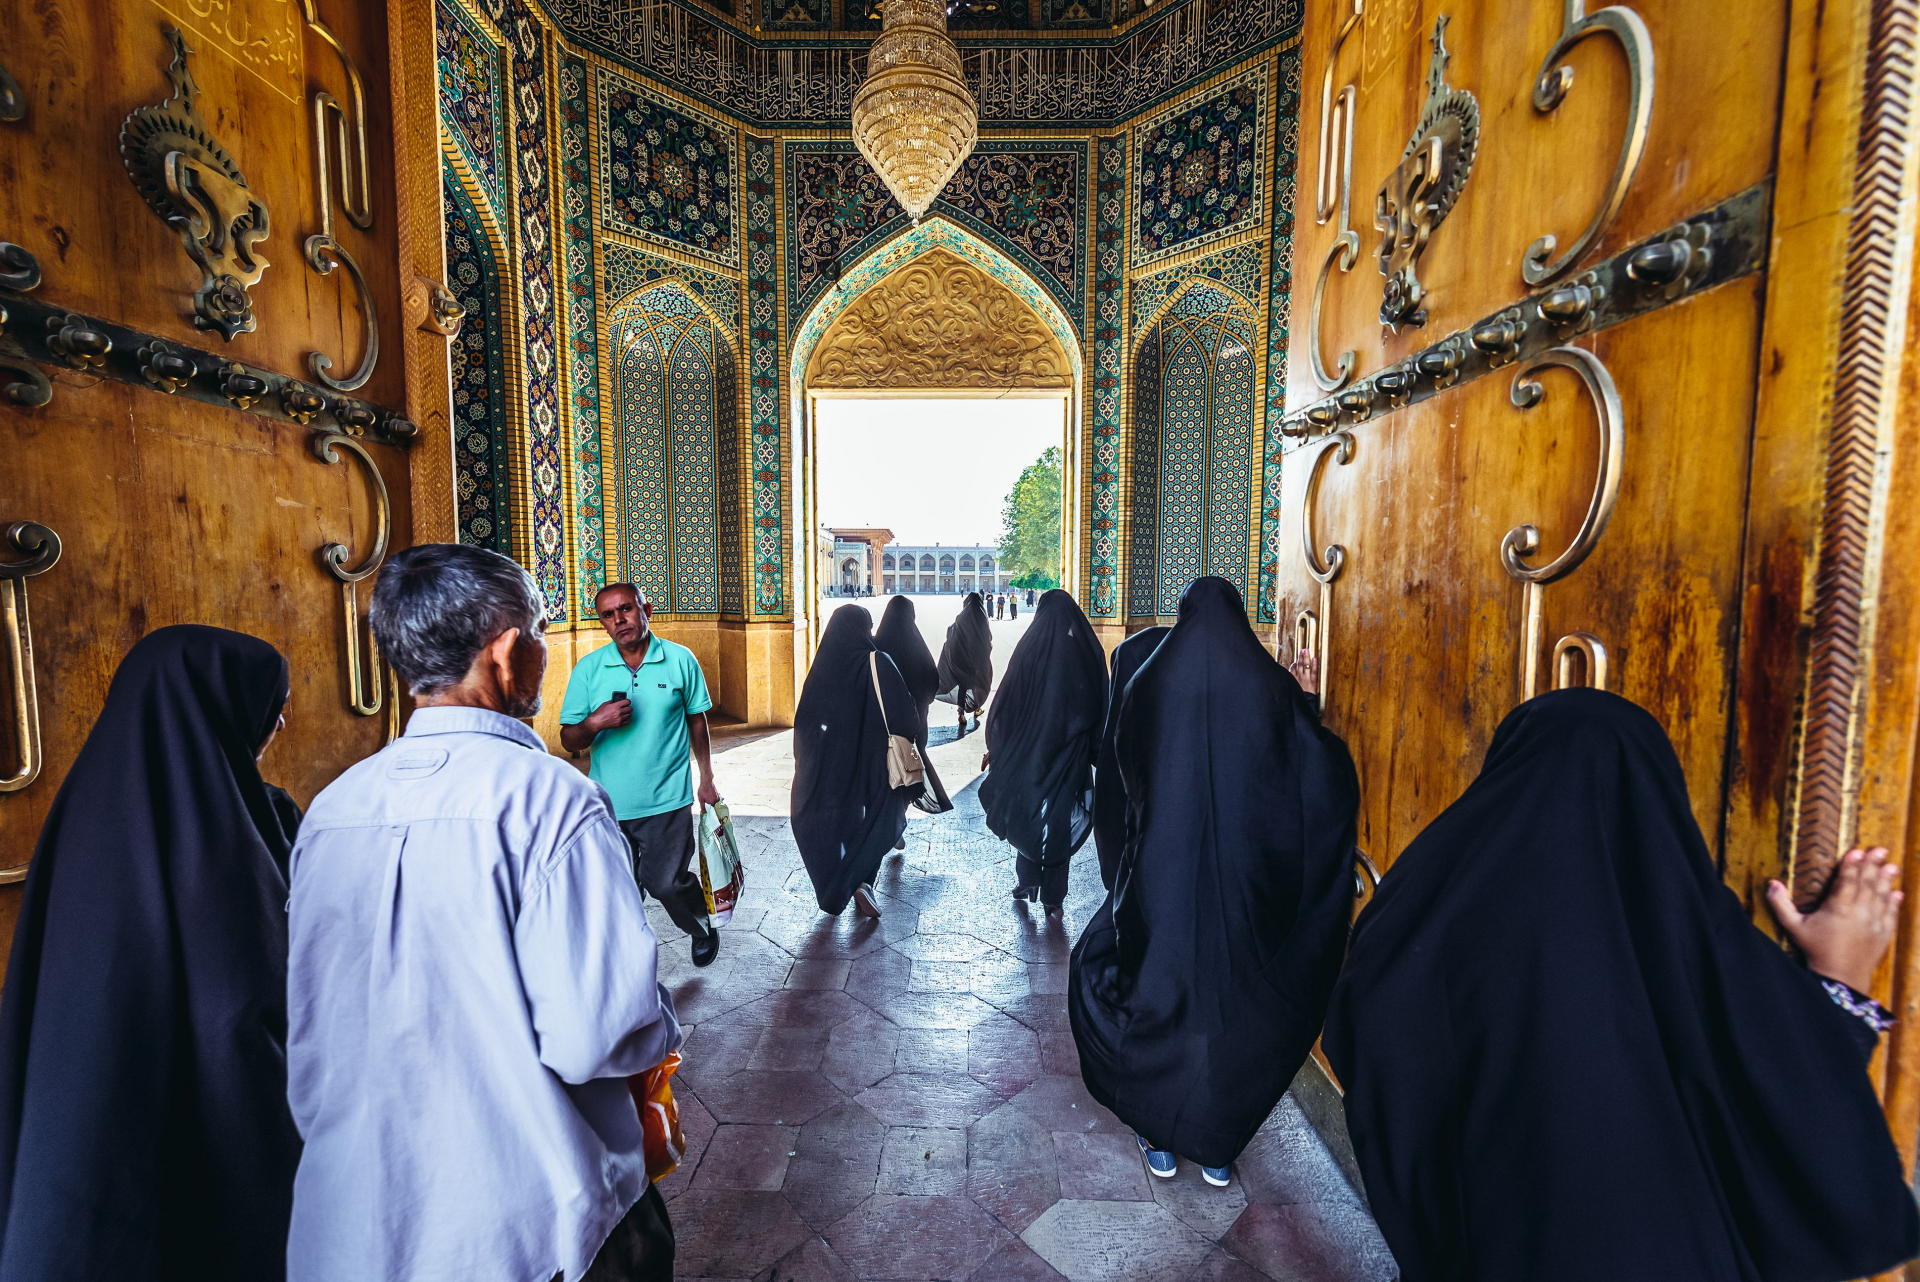 13 неща, които туристите никога не трябва да правят в Иран